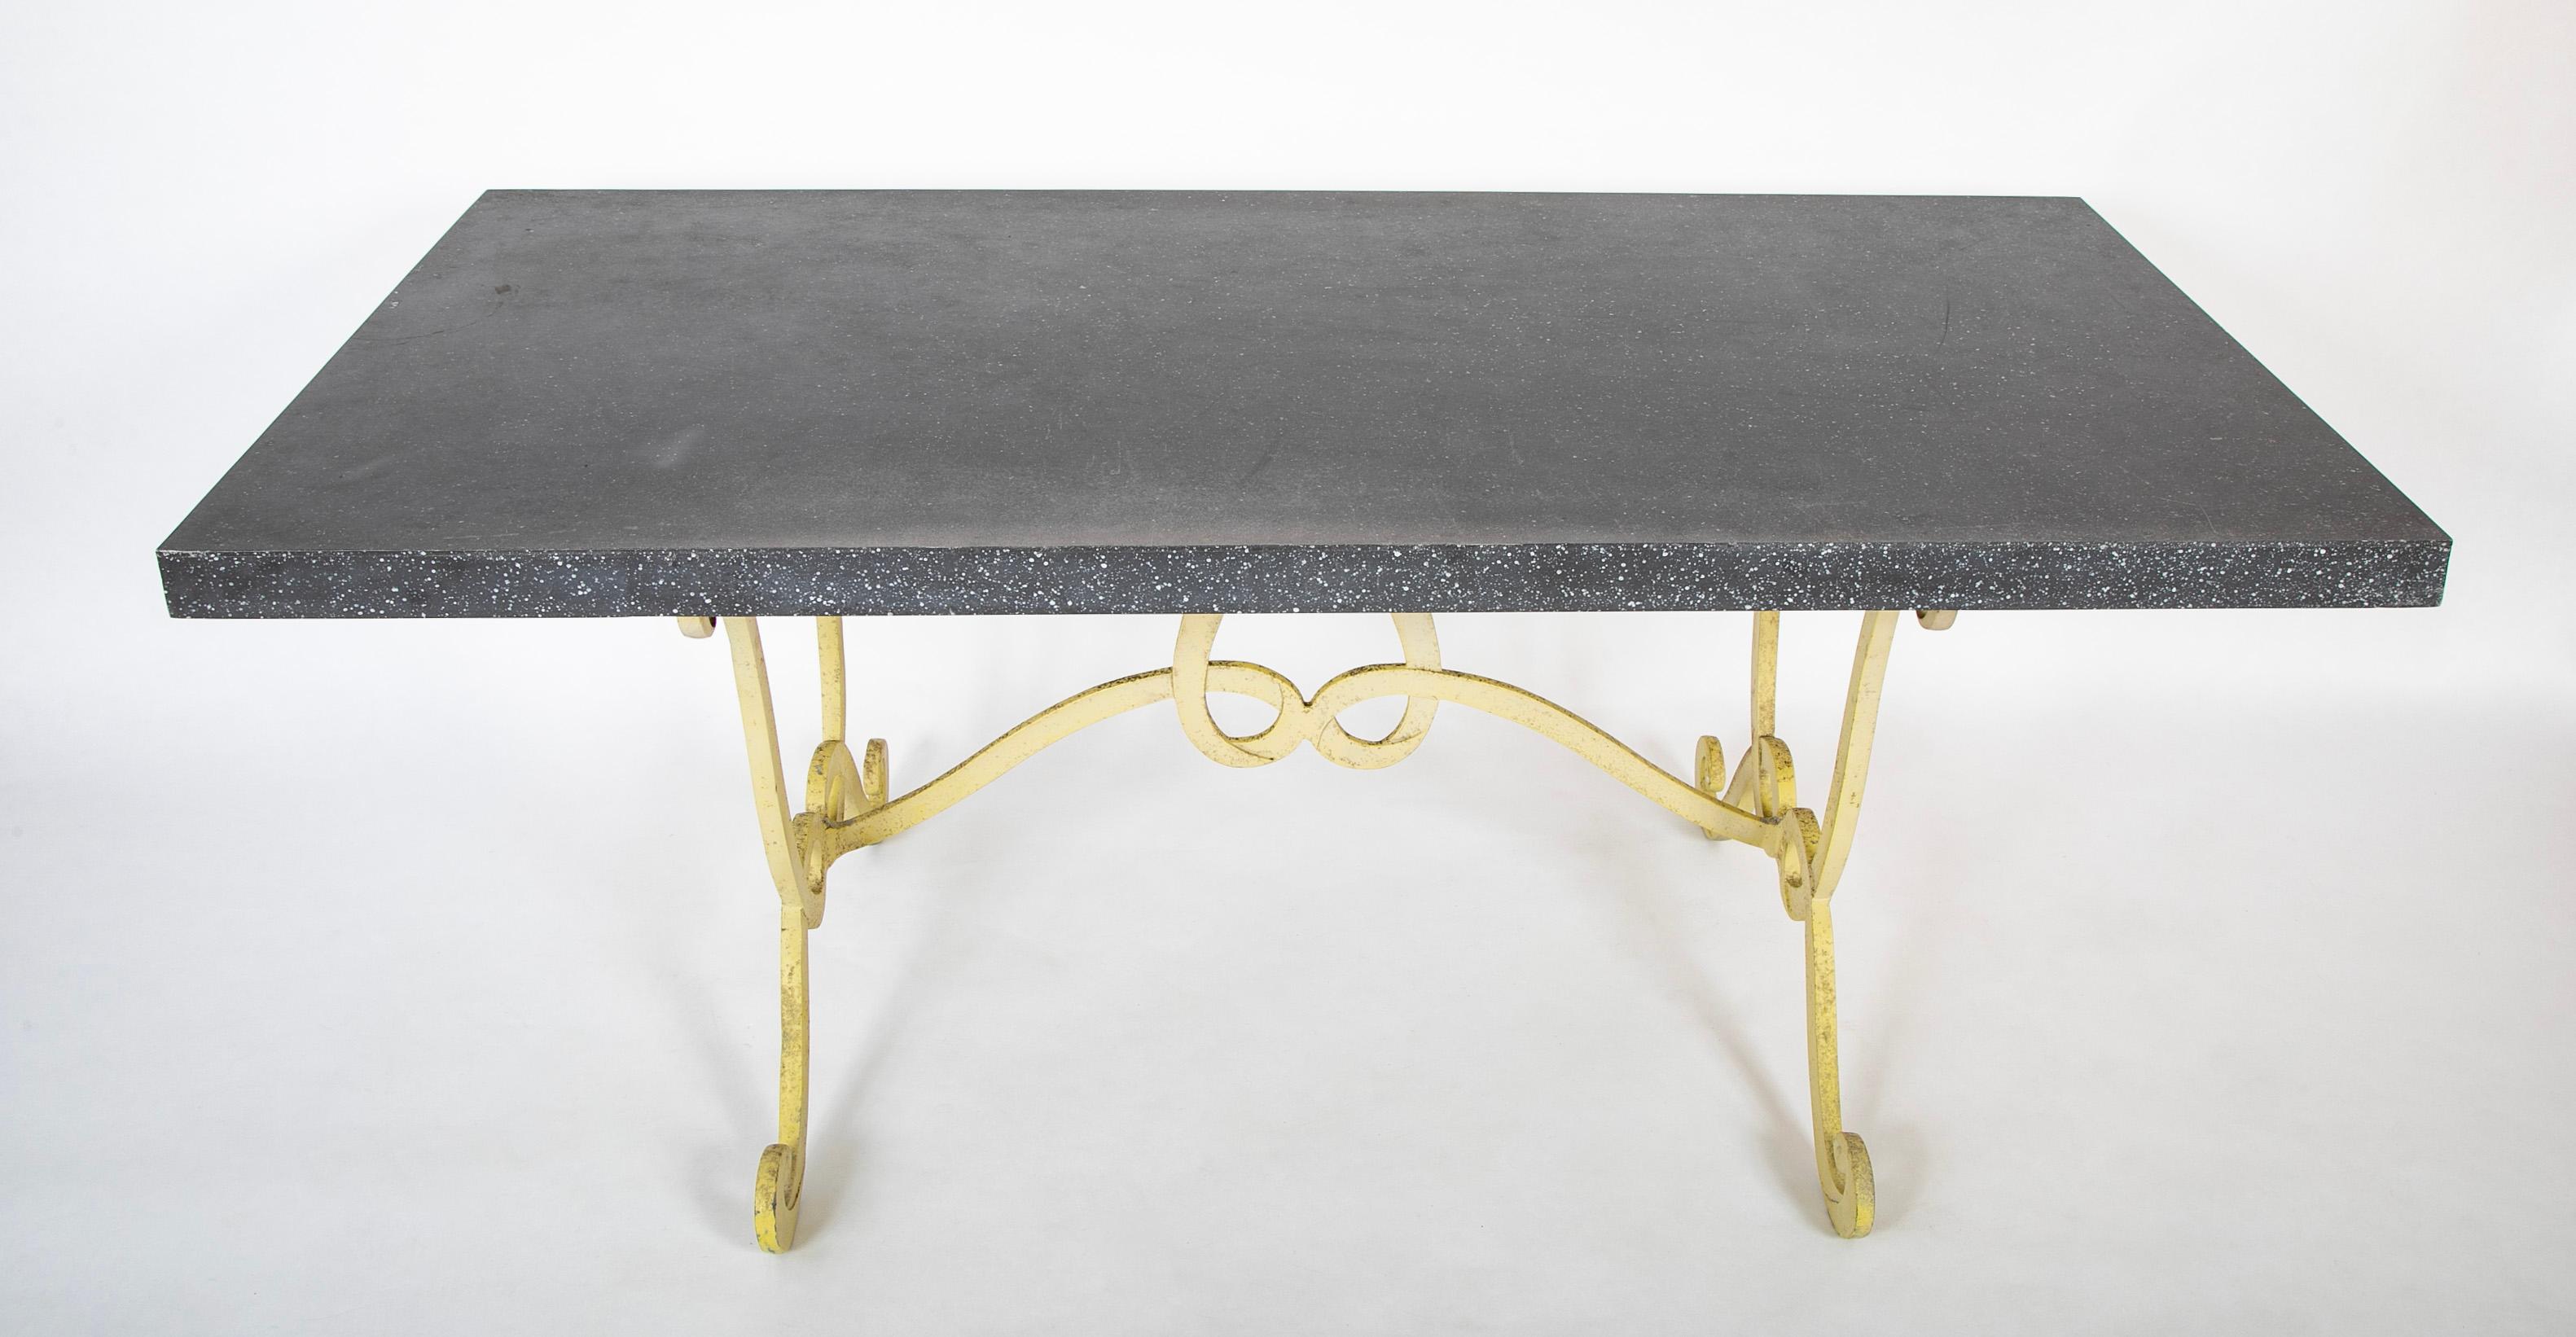 Seltener, ungewöhnlicher und möglicherweise einzigartiger Tisch, der Dorothy Draper zugeschrieben wird. Die Stahlplatte ist mit schwarzem Porphyrimitat lackiert, der wunderschöne schmiedeeiserne Sockel ist hellgelb. Alles Originallack. Der Sockel